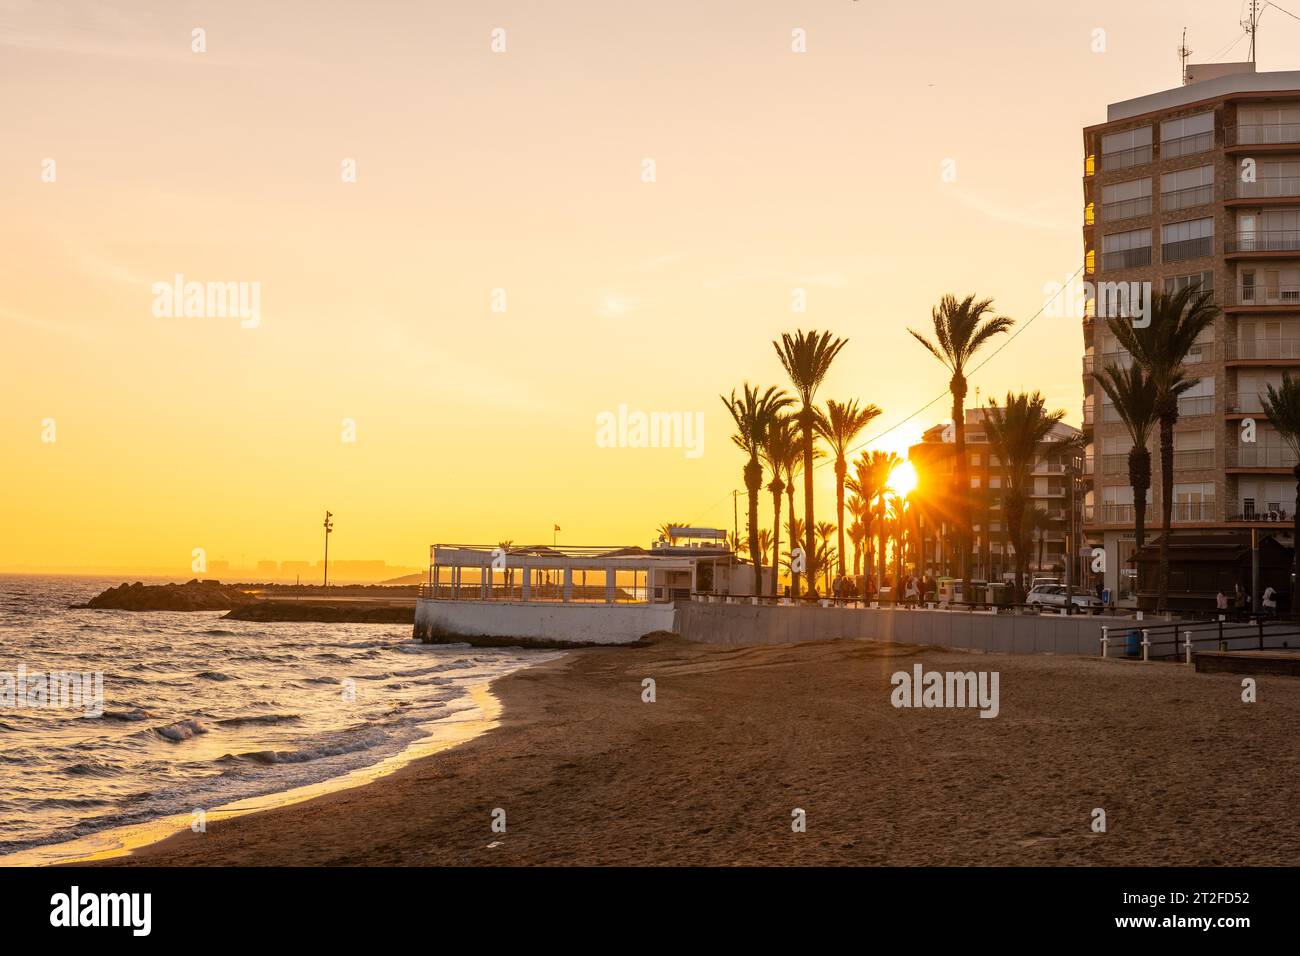 Wunderschöner Sonnenuntergang am Playa del Cura in der Küstenstadt Torrevieja, Alicante, Valencianische Gemeinde. Spanien, Mittelmeer an der Costa Blanca Stockfoto